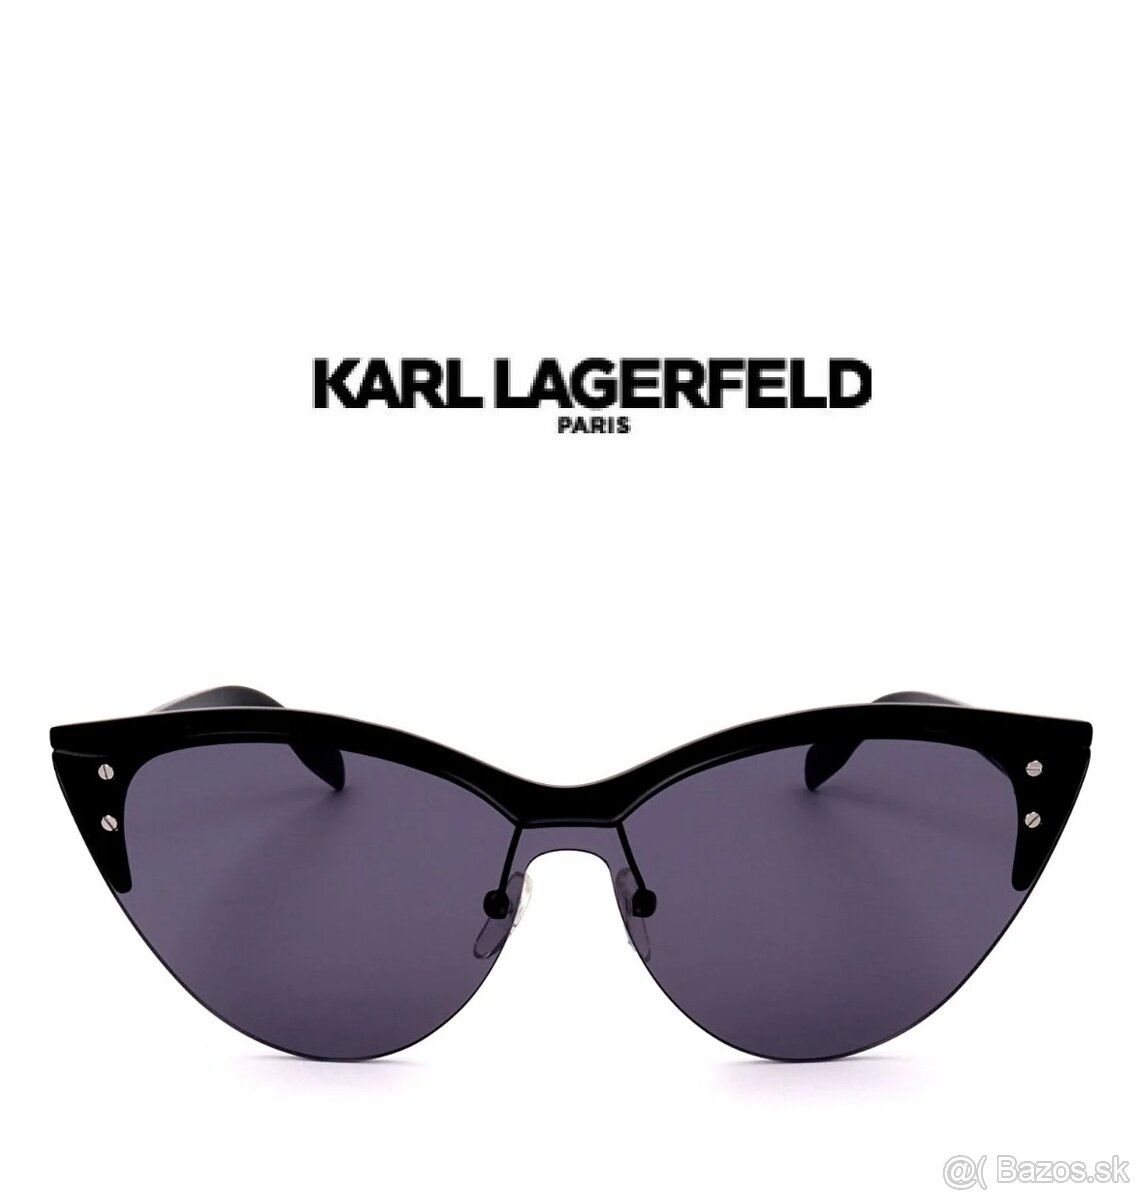 Karl Lagerfeld KL314S 001 BLACK 64/20/140 Women´s Sunglasses